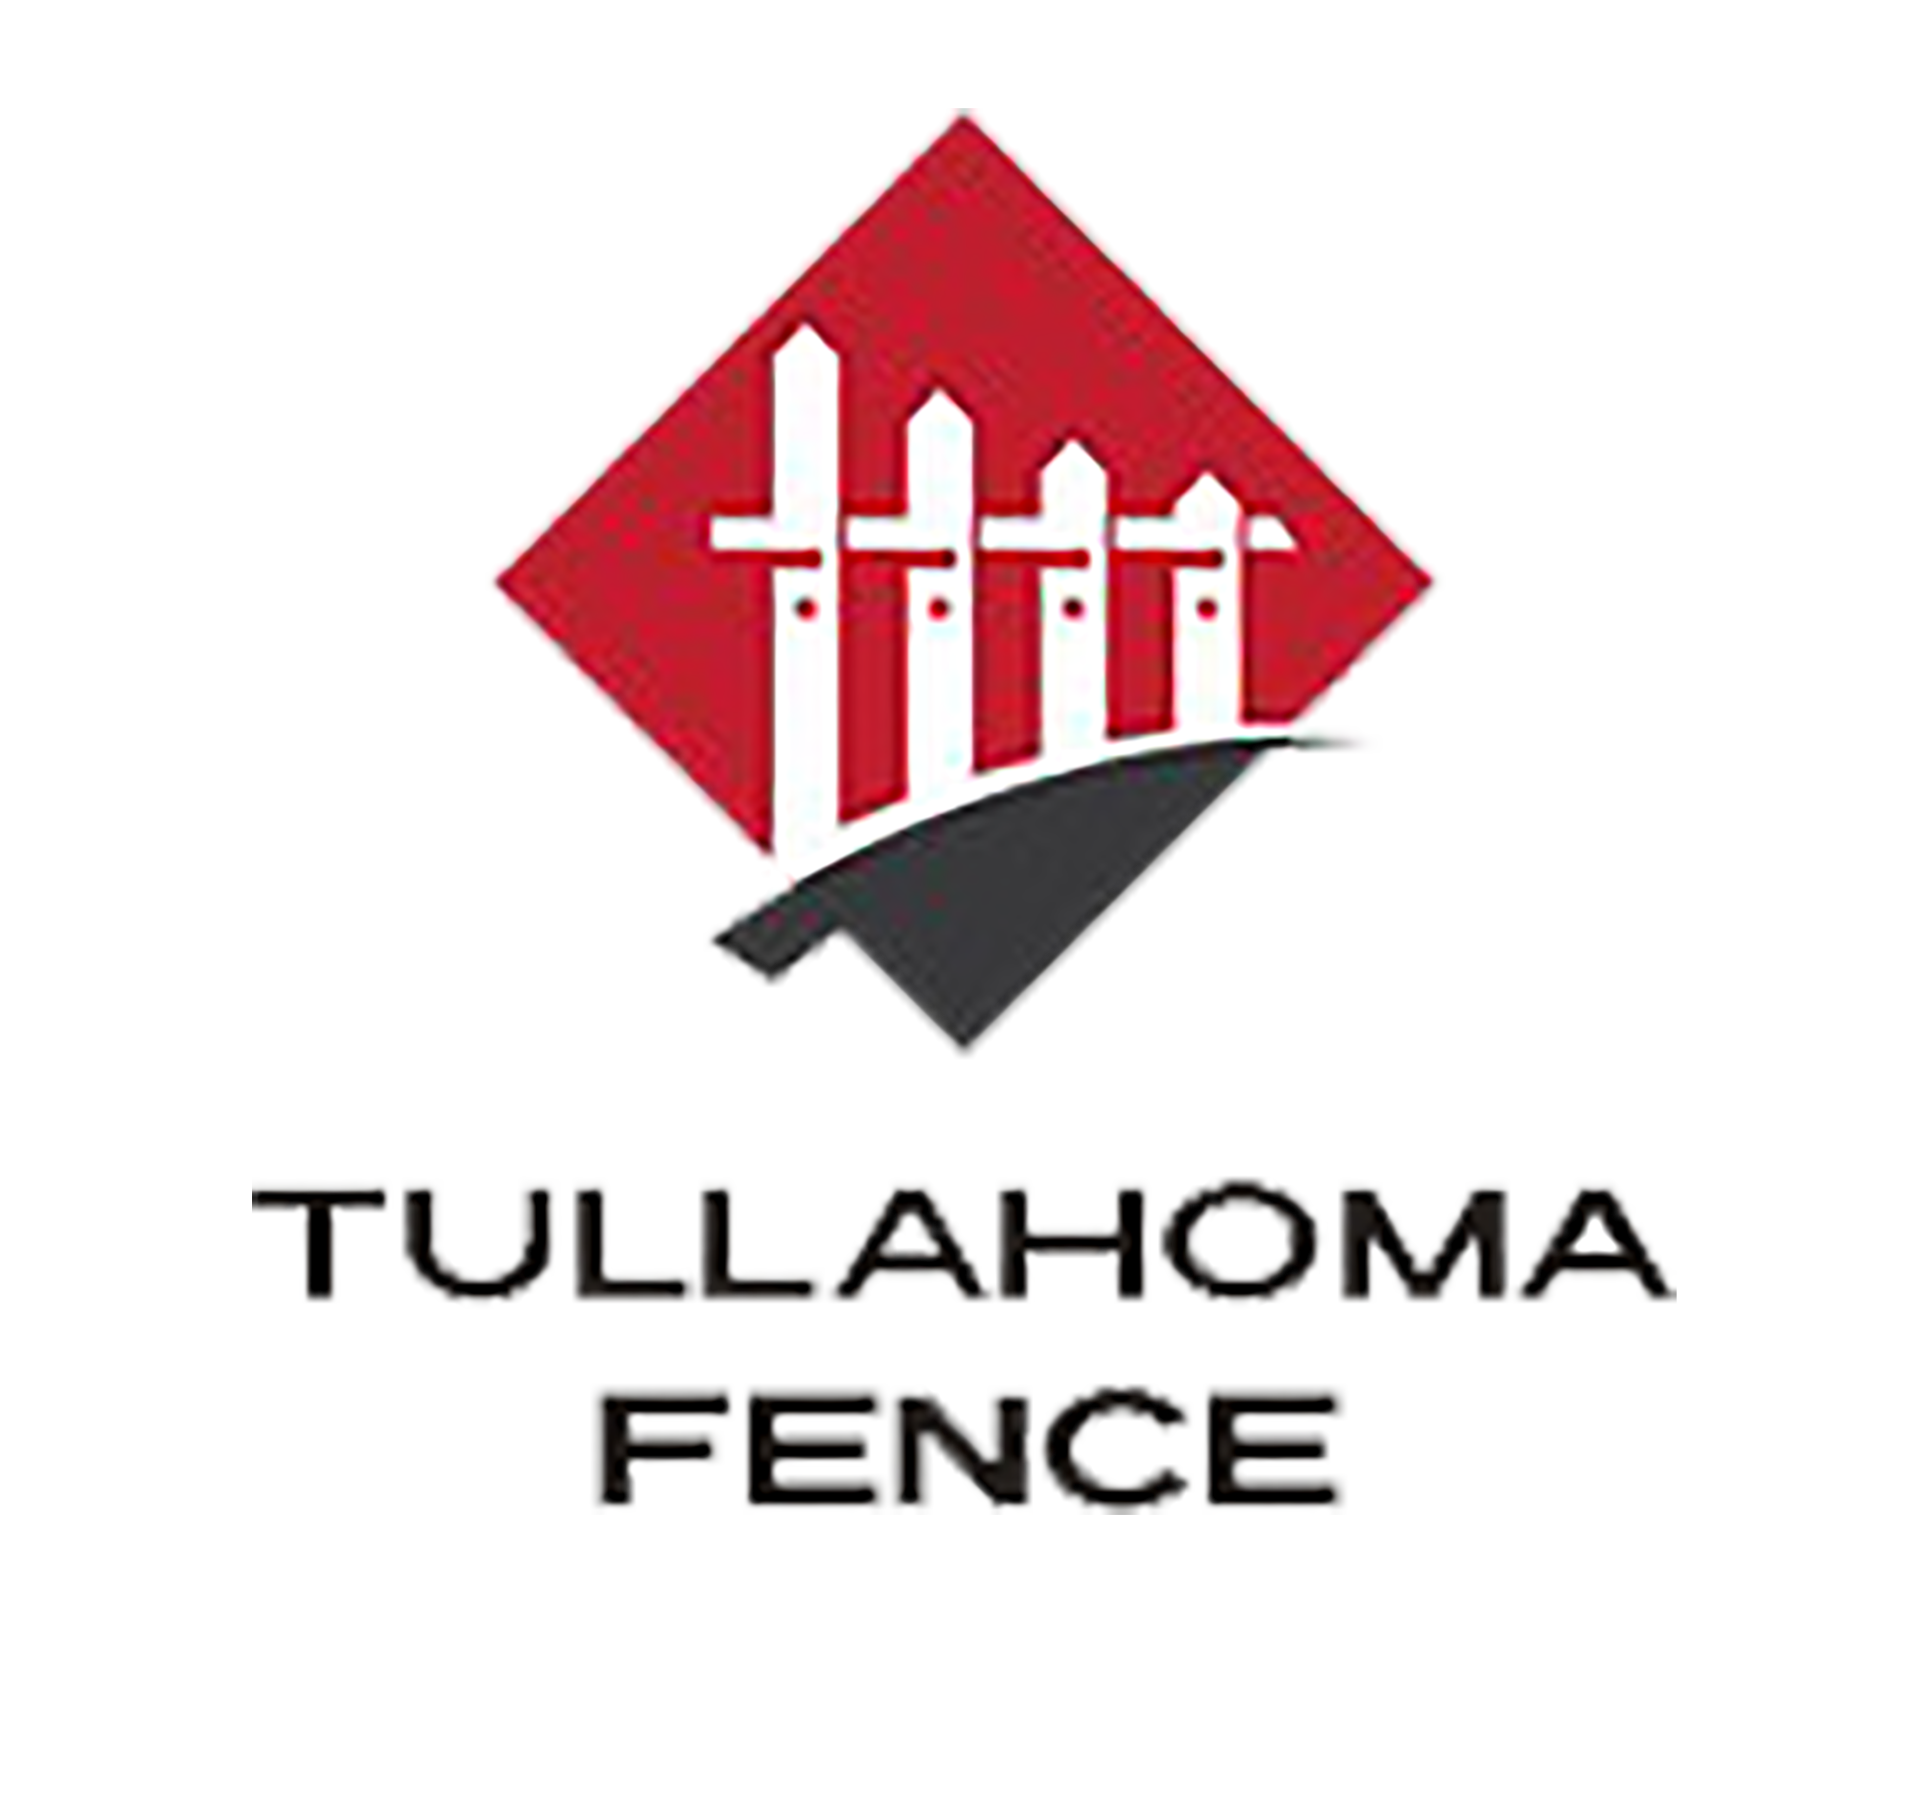 Tullahoma fence company